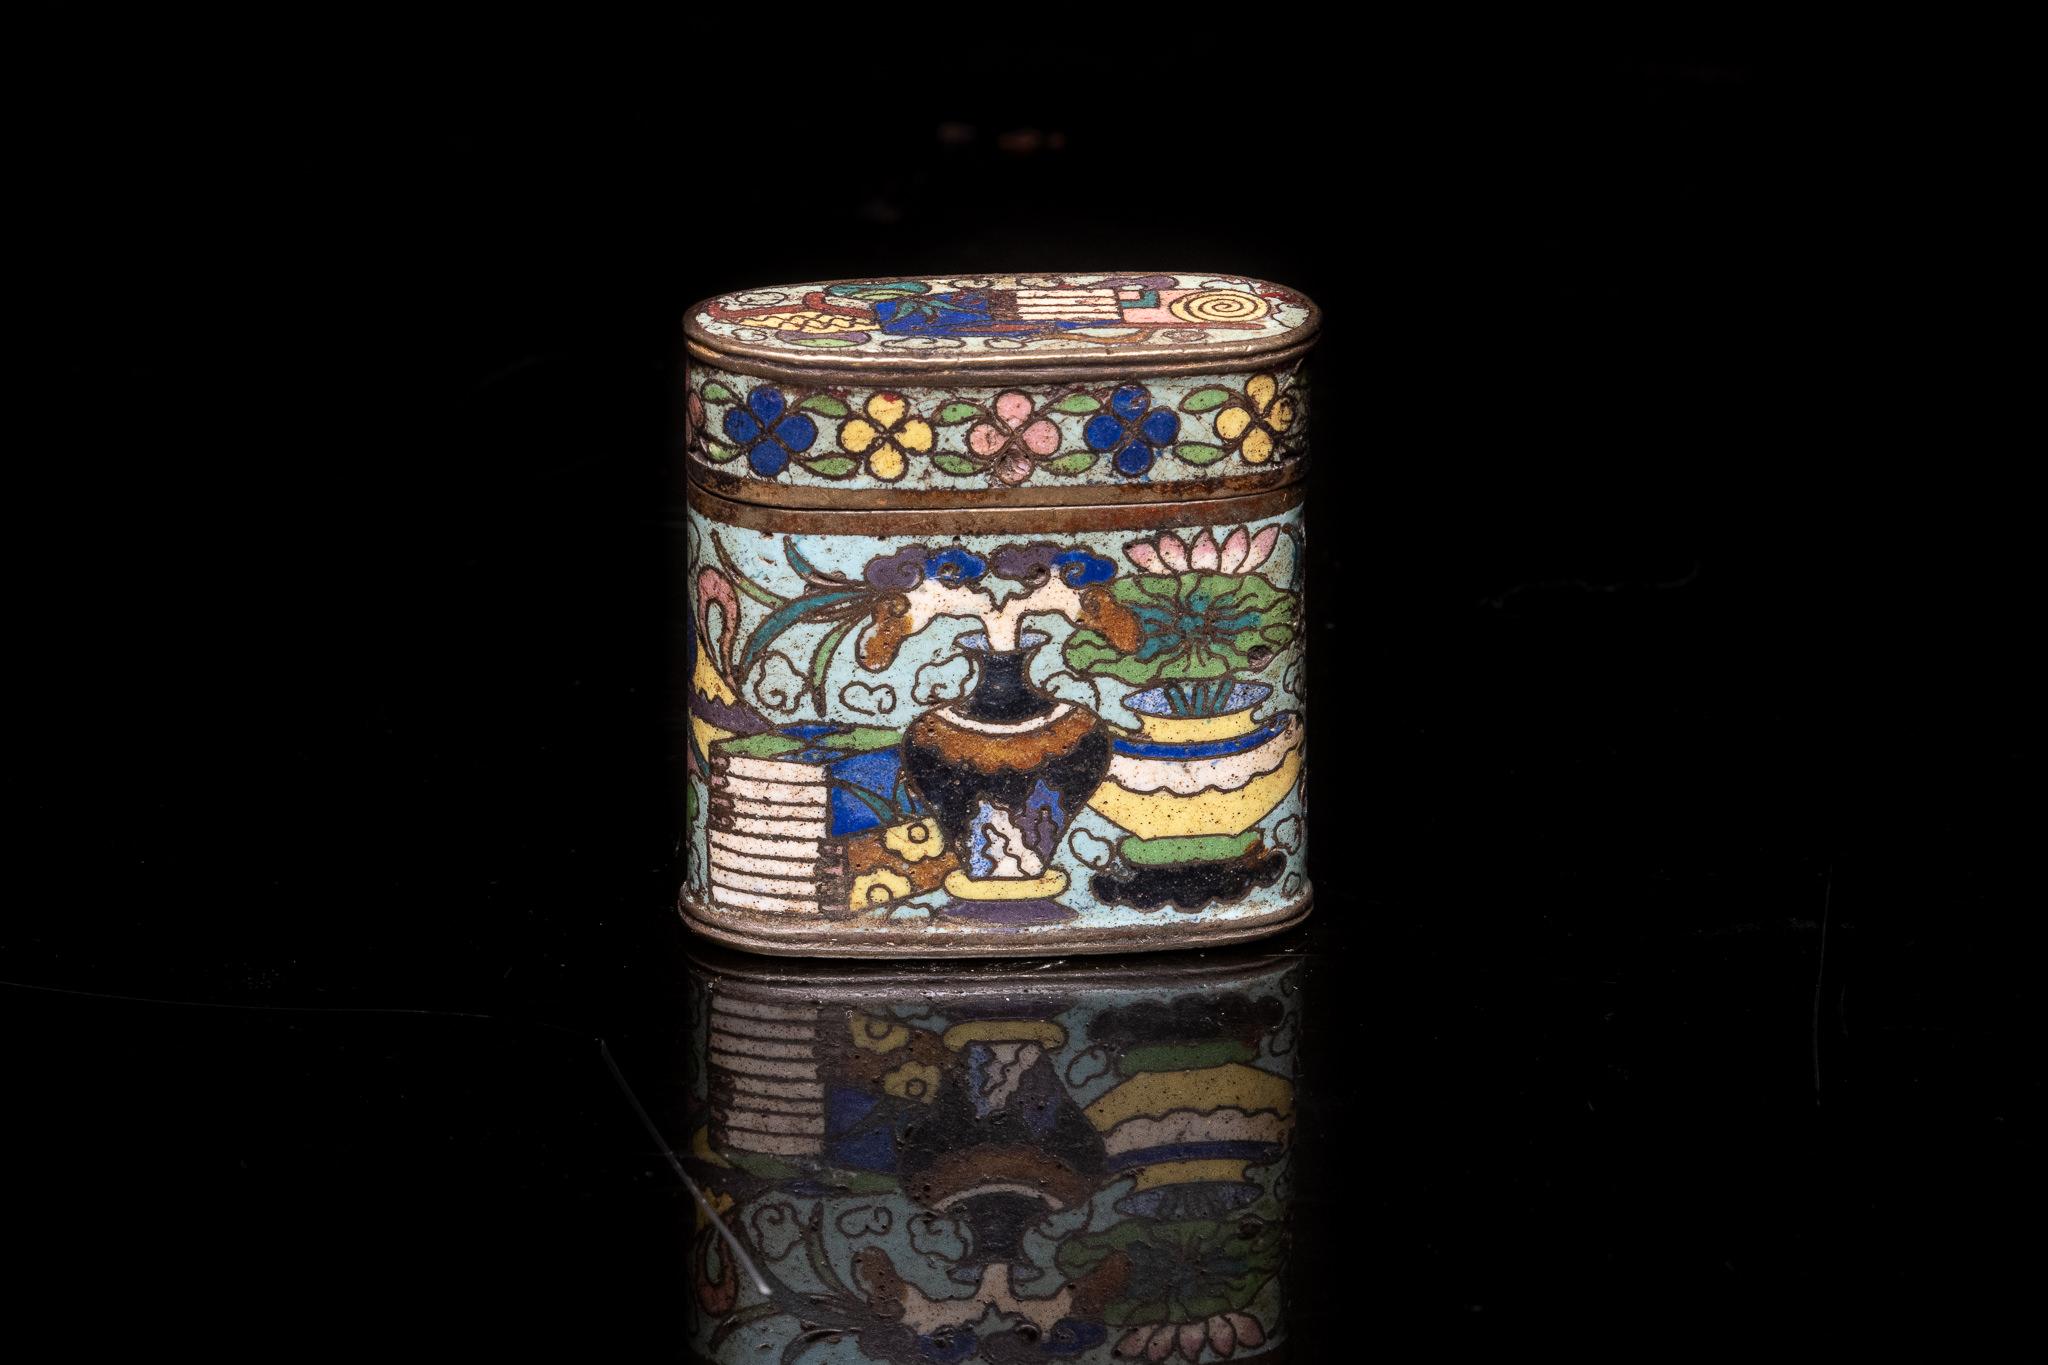 Ancienne boîte à opium chinoise en émail cloisonné, décorée de motifs floraux et de scènes intérieures

Collection S S française